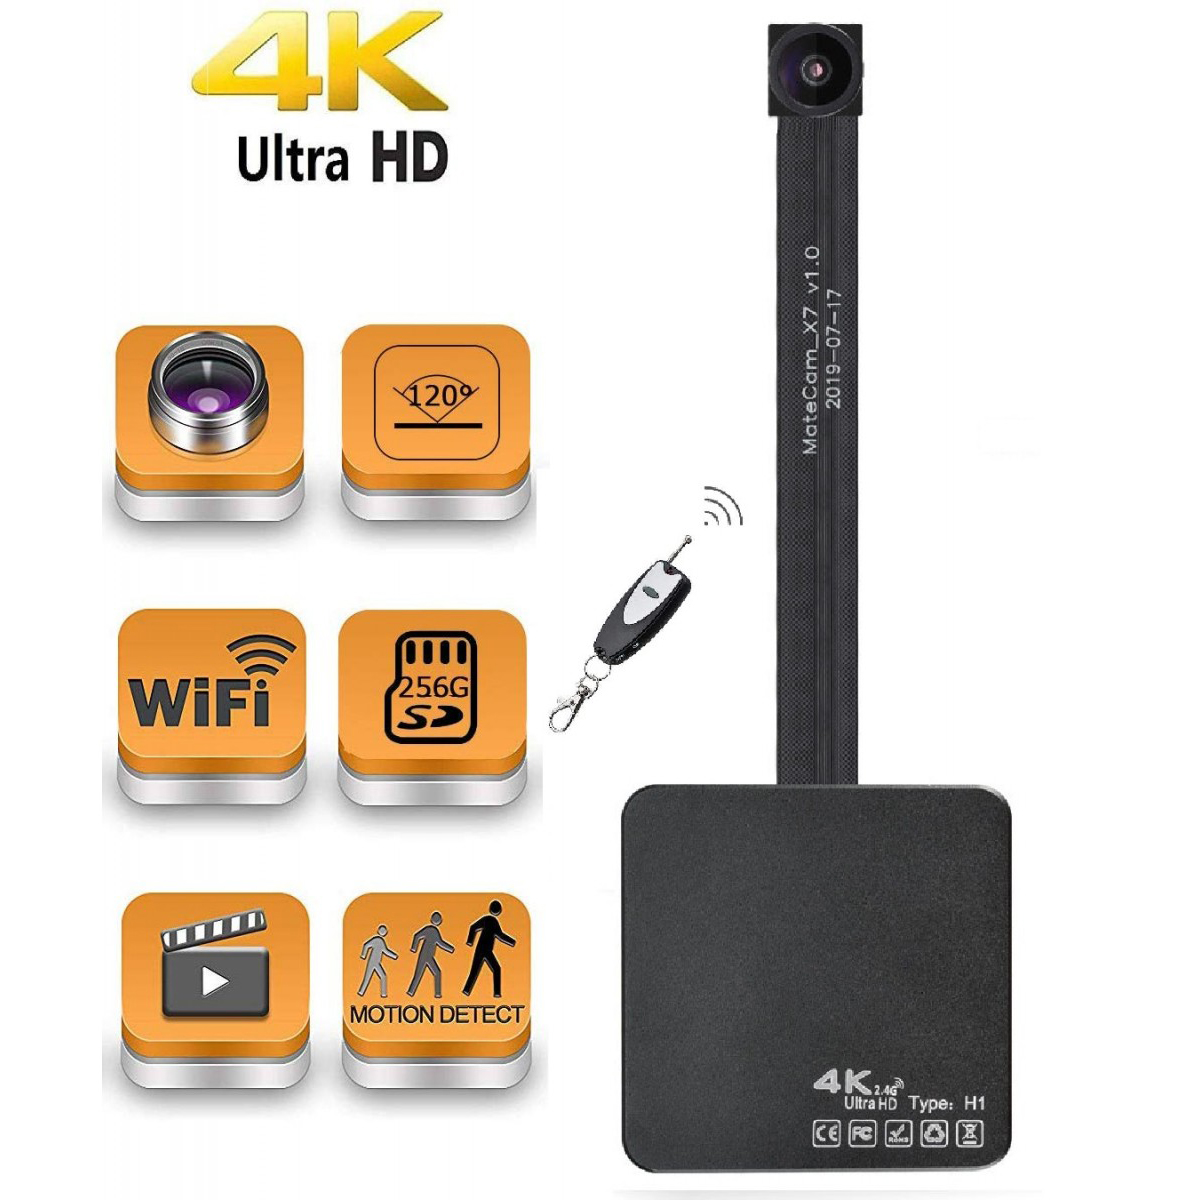 لنز 4K 120 درجه واقعی Ultra HD WiFi Hidden Spy Camera دوربین مینی دوربین فیلمبرداری بی سیم قابل حمل ضبط ویدیو با تشخیص حرکت Nanny Cam برای نظارت بر امنیت خانه تا 400 گیگابایت